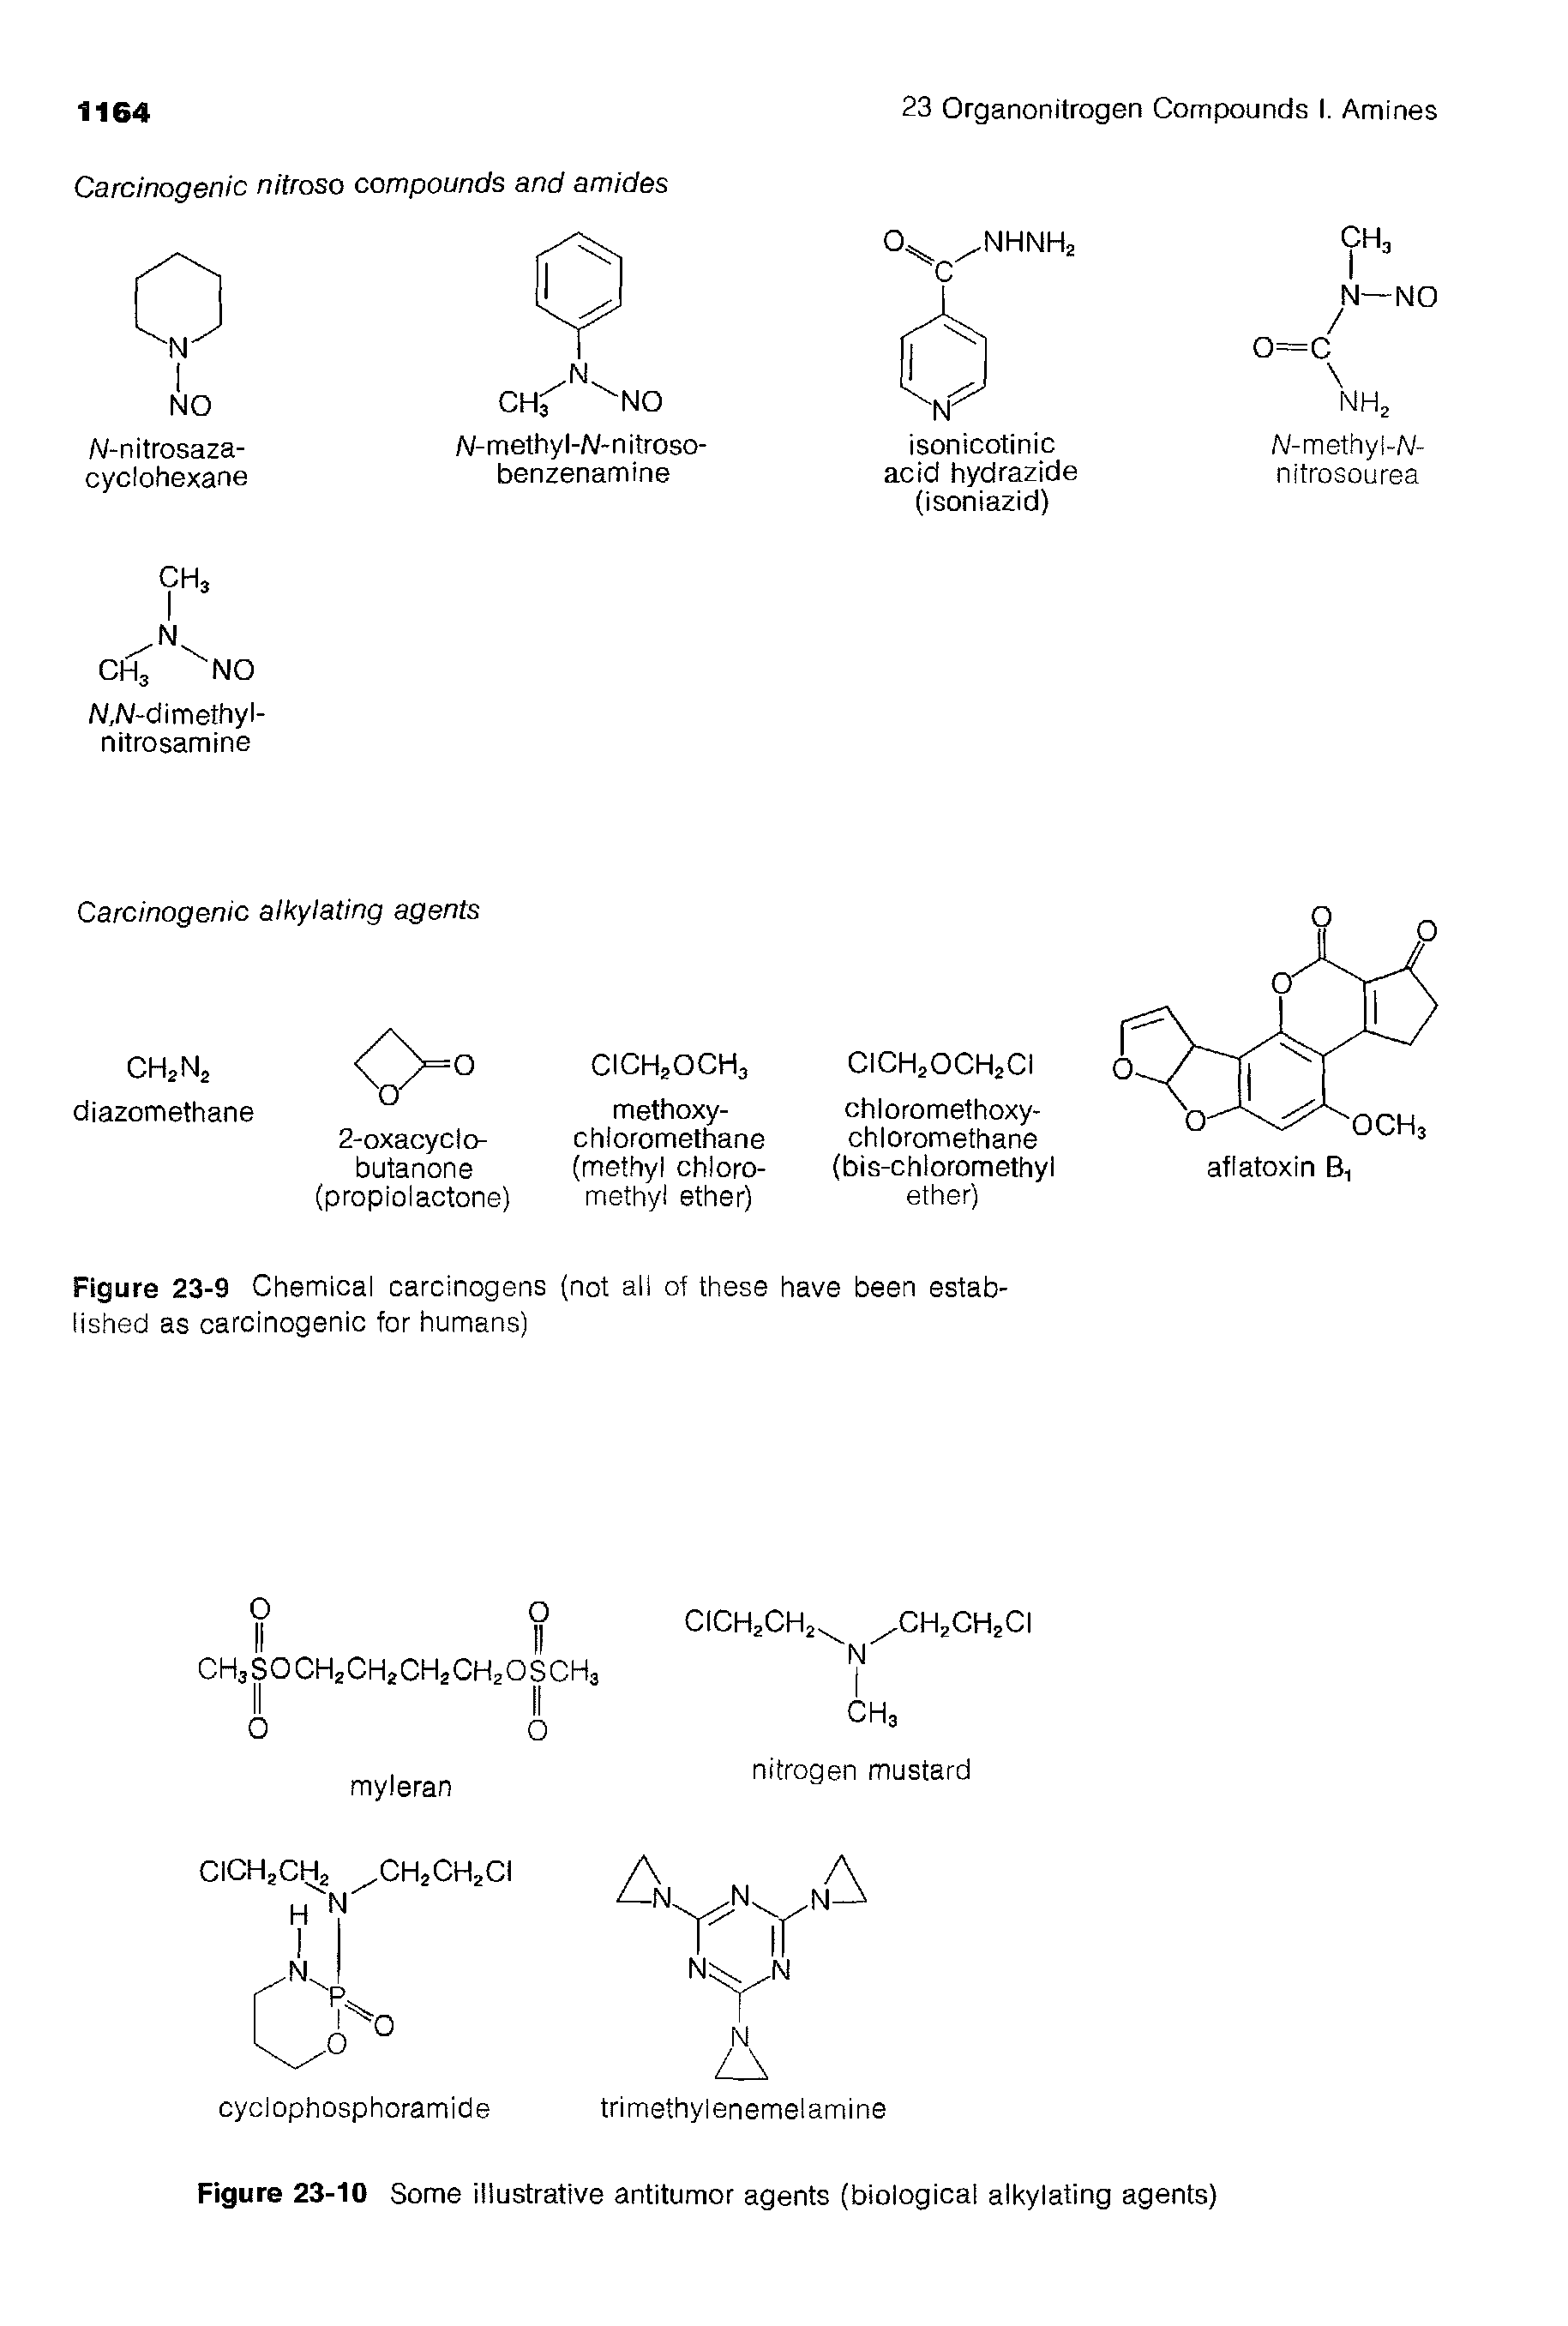 Figure 23-10 Some illustrative antitumor agents (biological alkylating agents)...